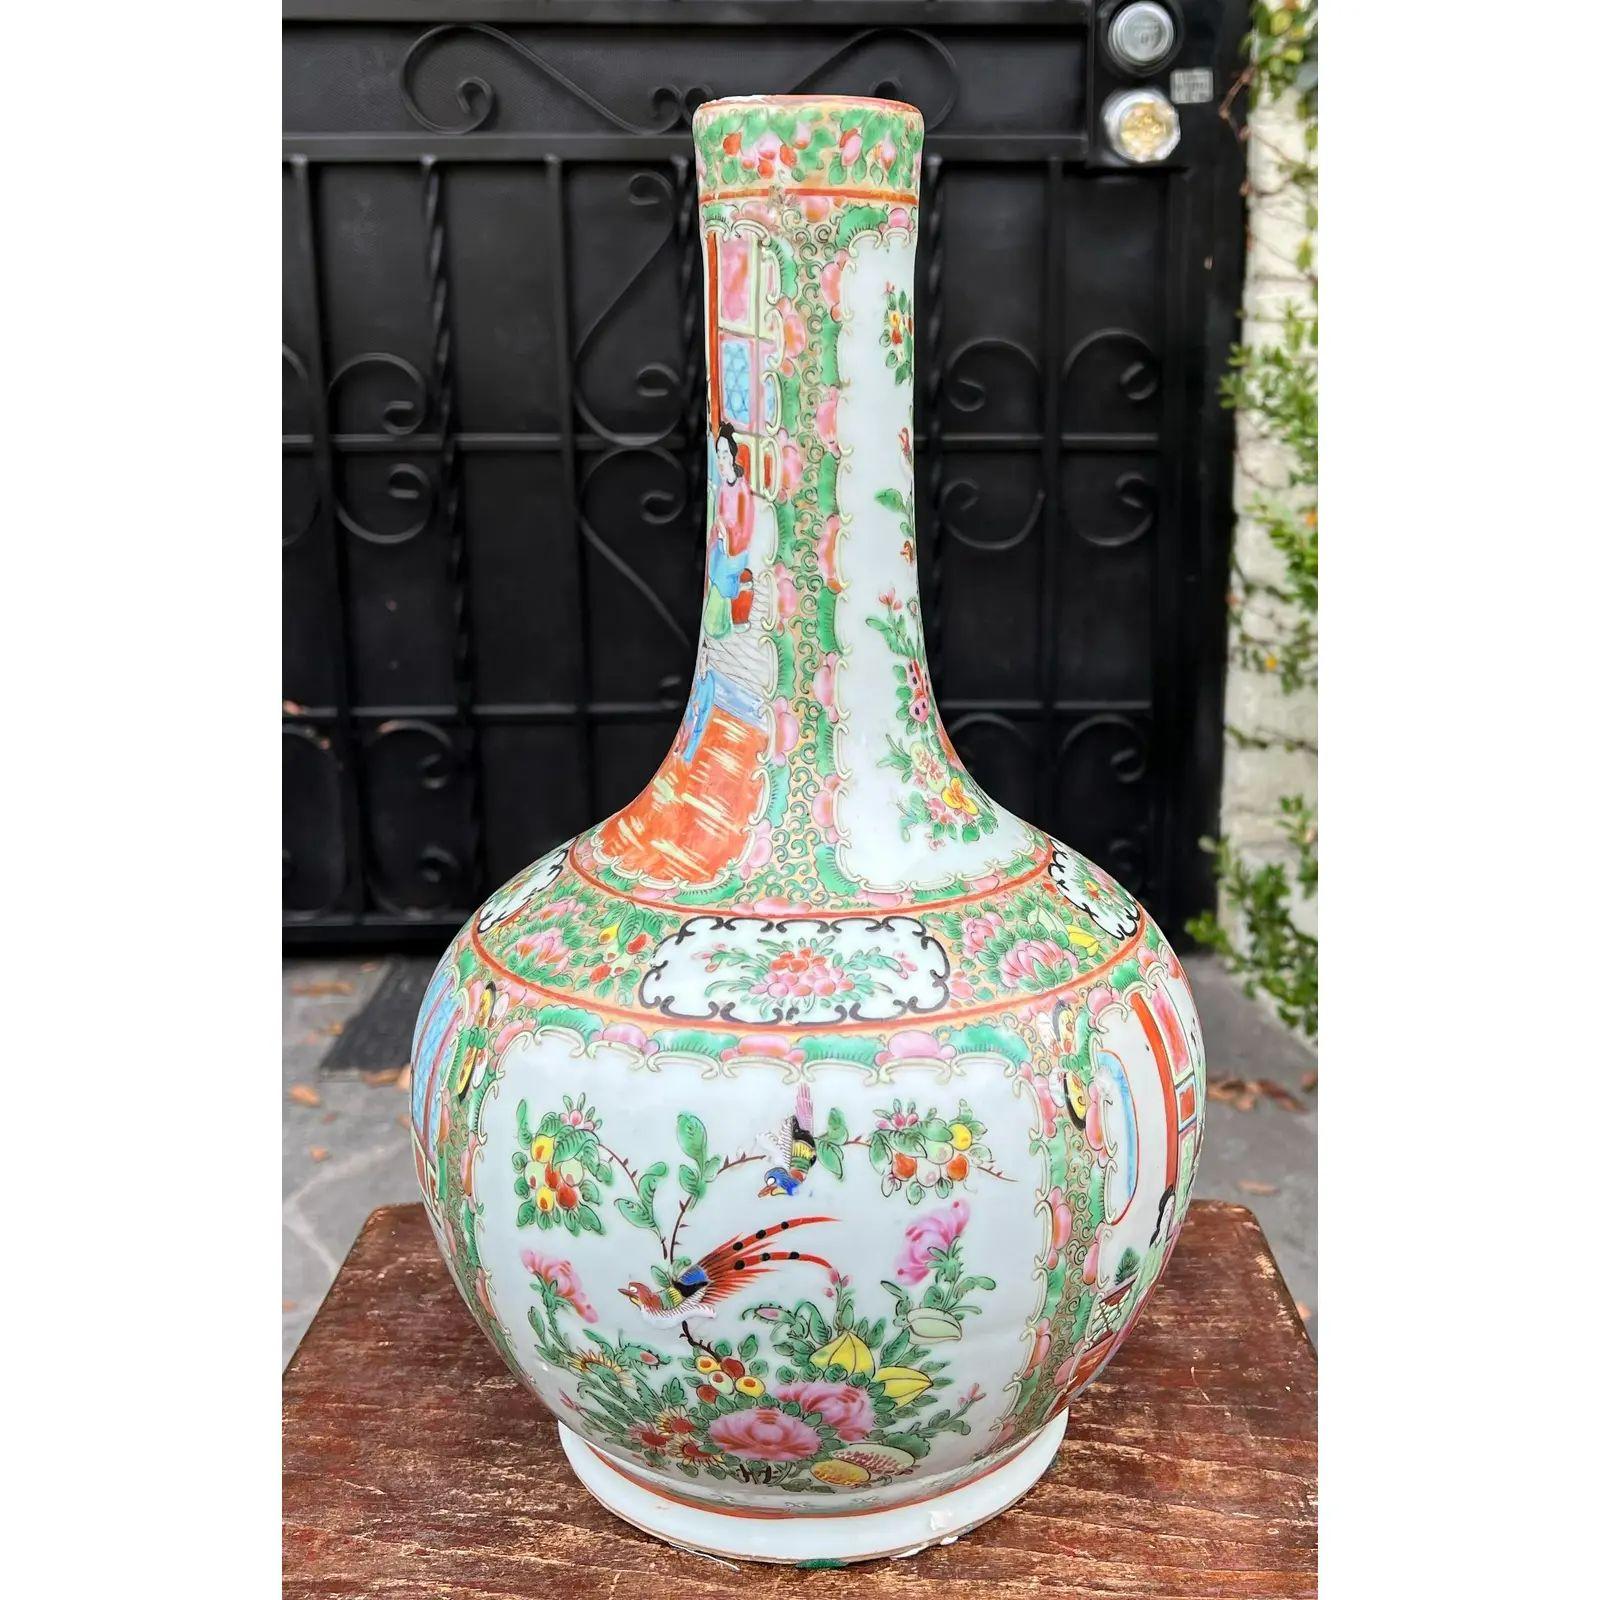 Vase bouteille antique chinois à médaillon en forme de rose. Il est magnifiquement peint à la main et présente des médaillons scéniques flanqués d'une décoration florale.

Informations complémentaires : 
Matériaux : Céramique
Couleur :